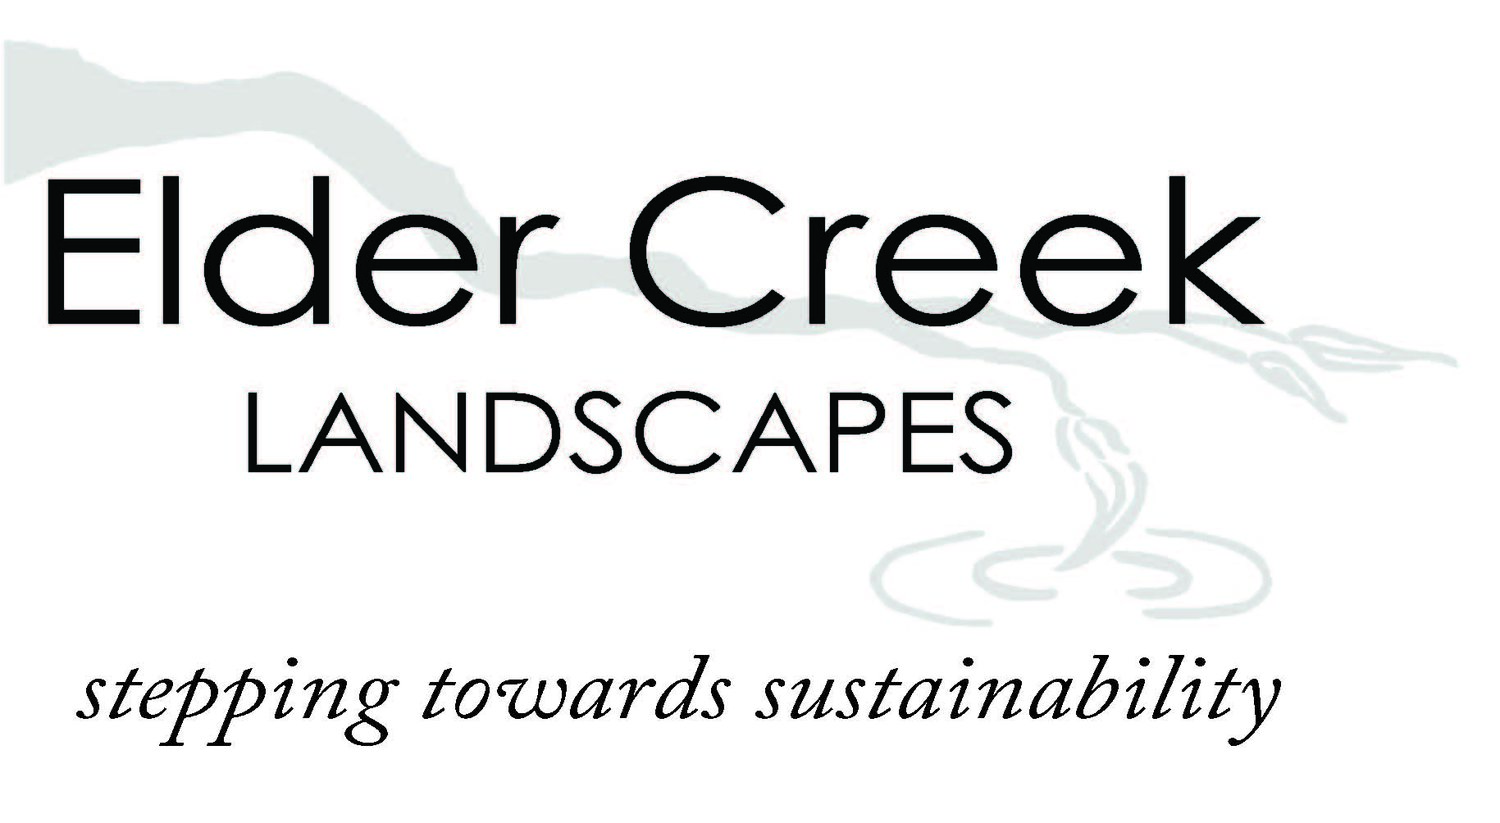 Elder Creek Landscapes